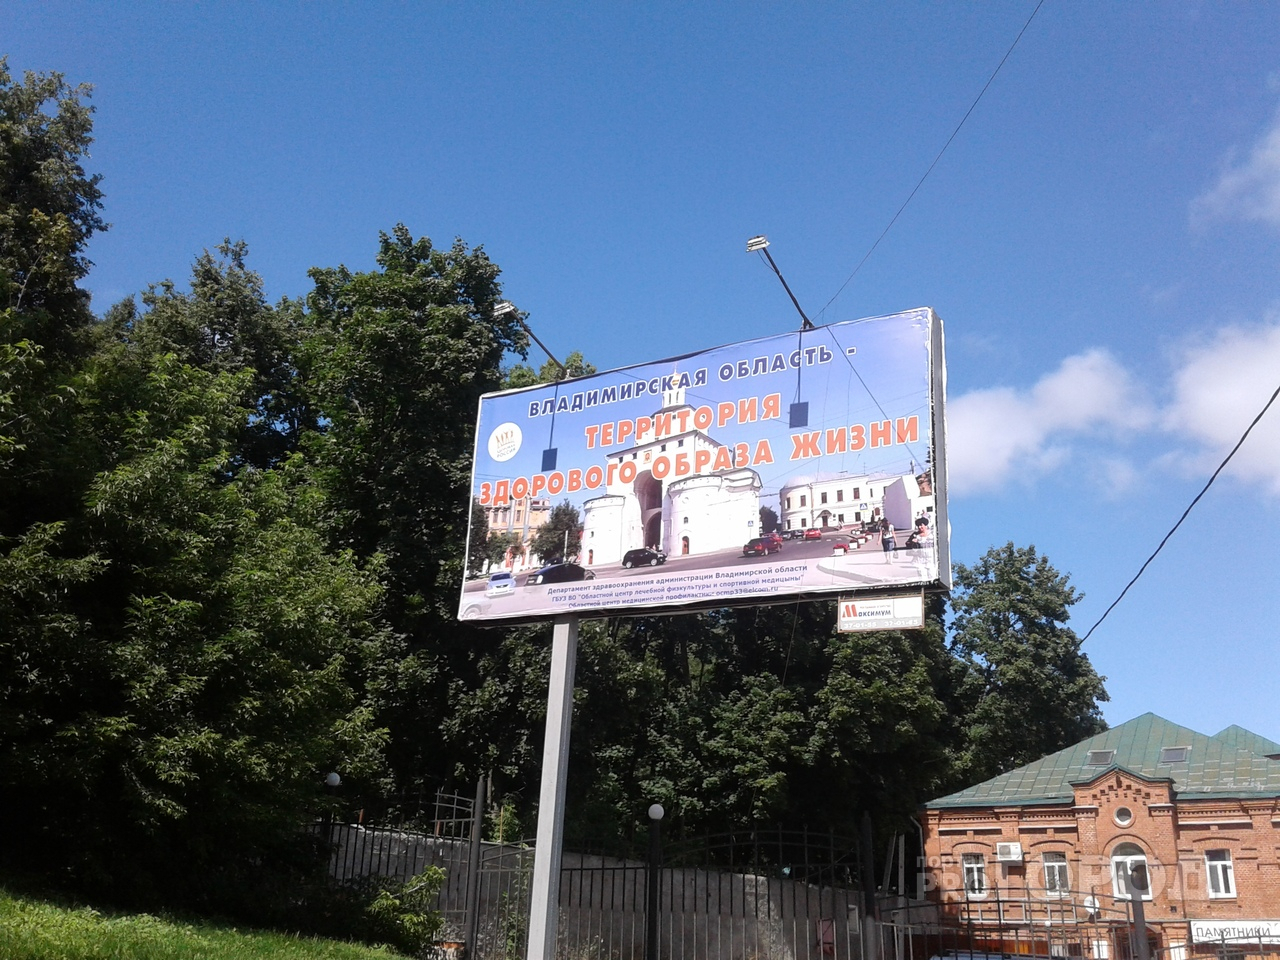 Центральную улицу Владимира "украшает" социальный плакат с грамматической ошибкой